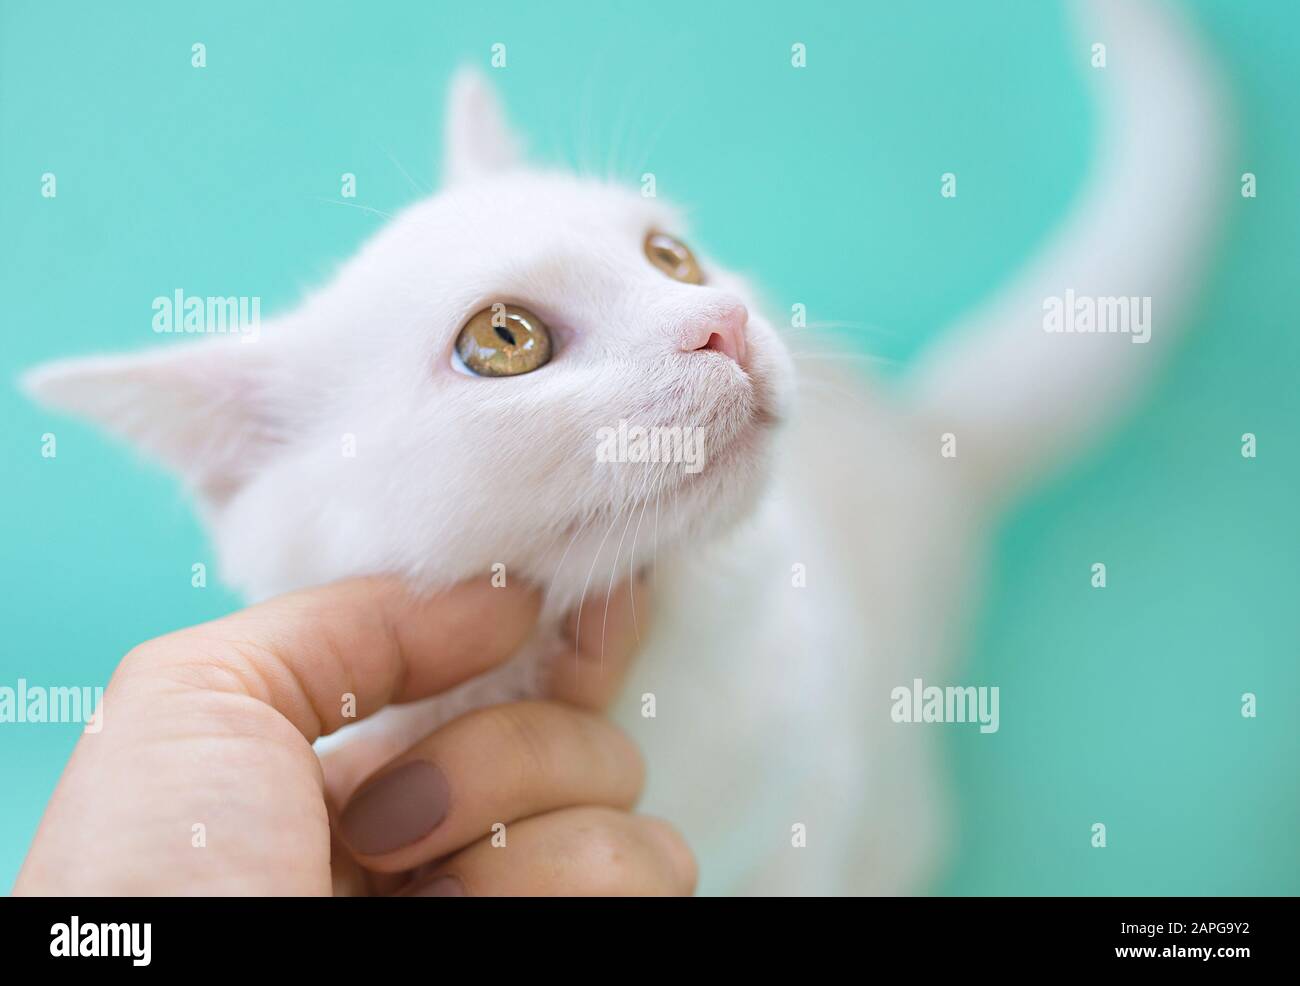 Main touchant mignon doux curieux chat blanc de chaton sur fond de couleur de menthol. Ami, animal de compagnie, allergie, tendresse, concept de solitude Banque D'Images